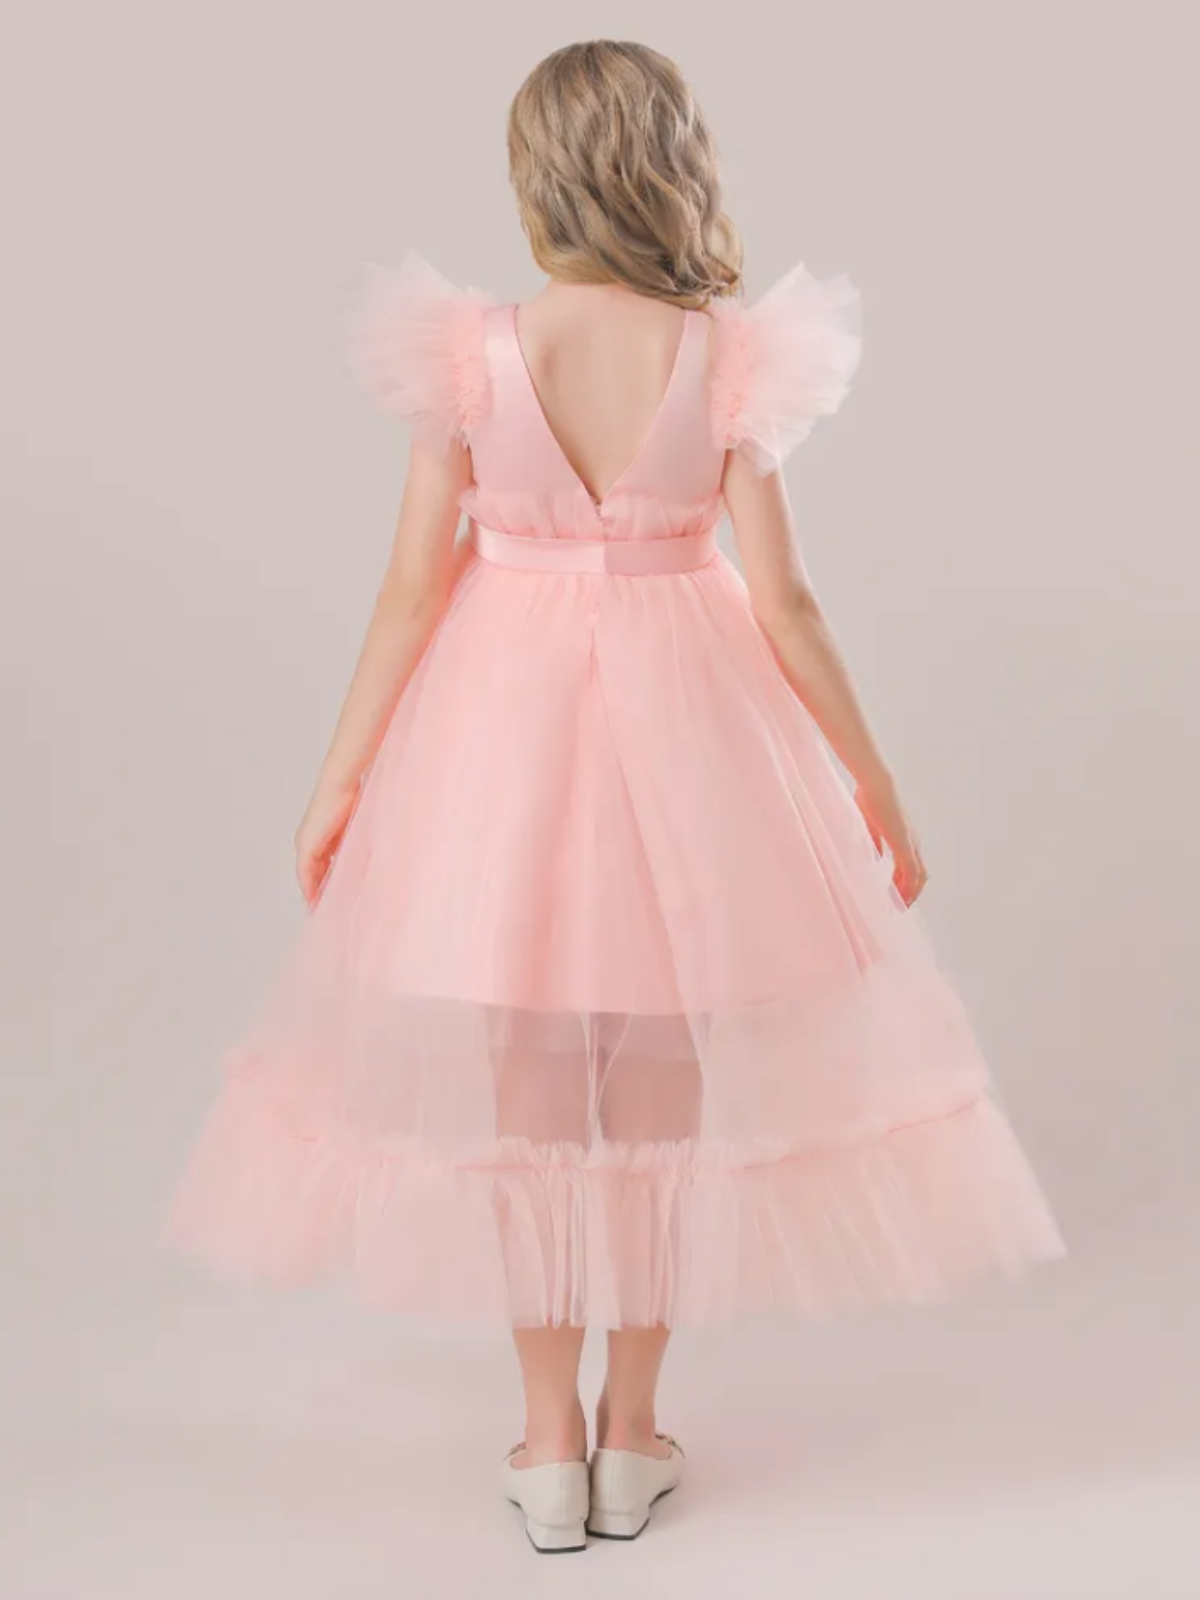 Mia Belle Girls Tulle Overlay Dress | Girls Spring Dresses